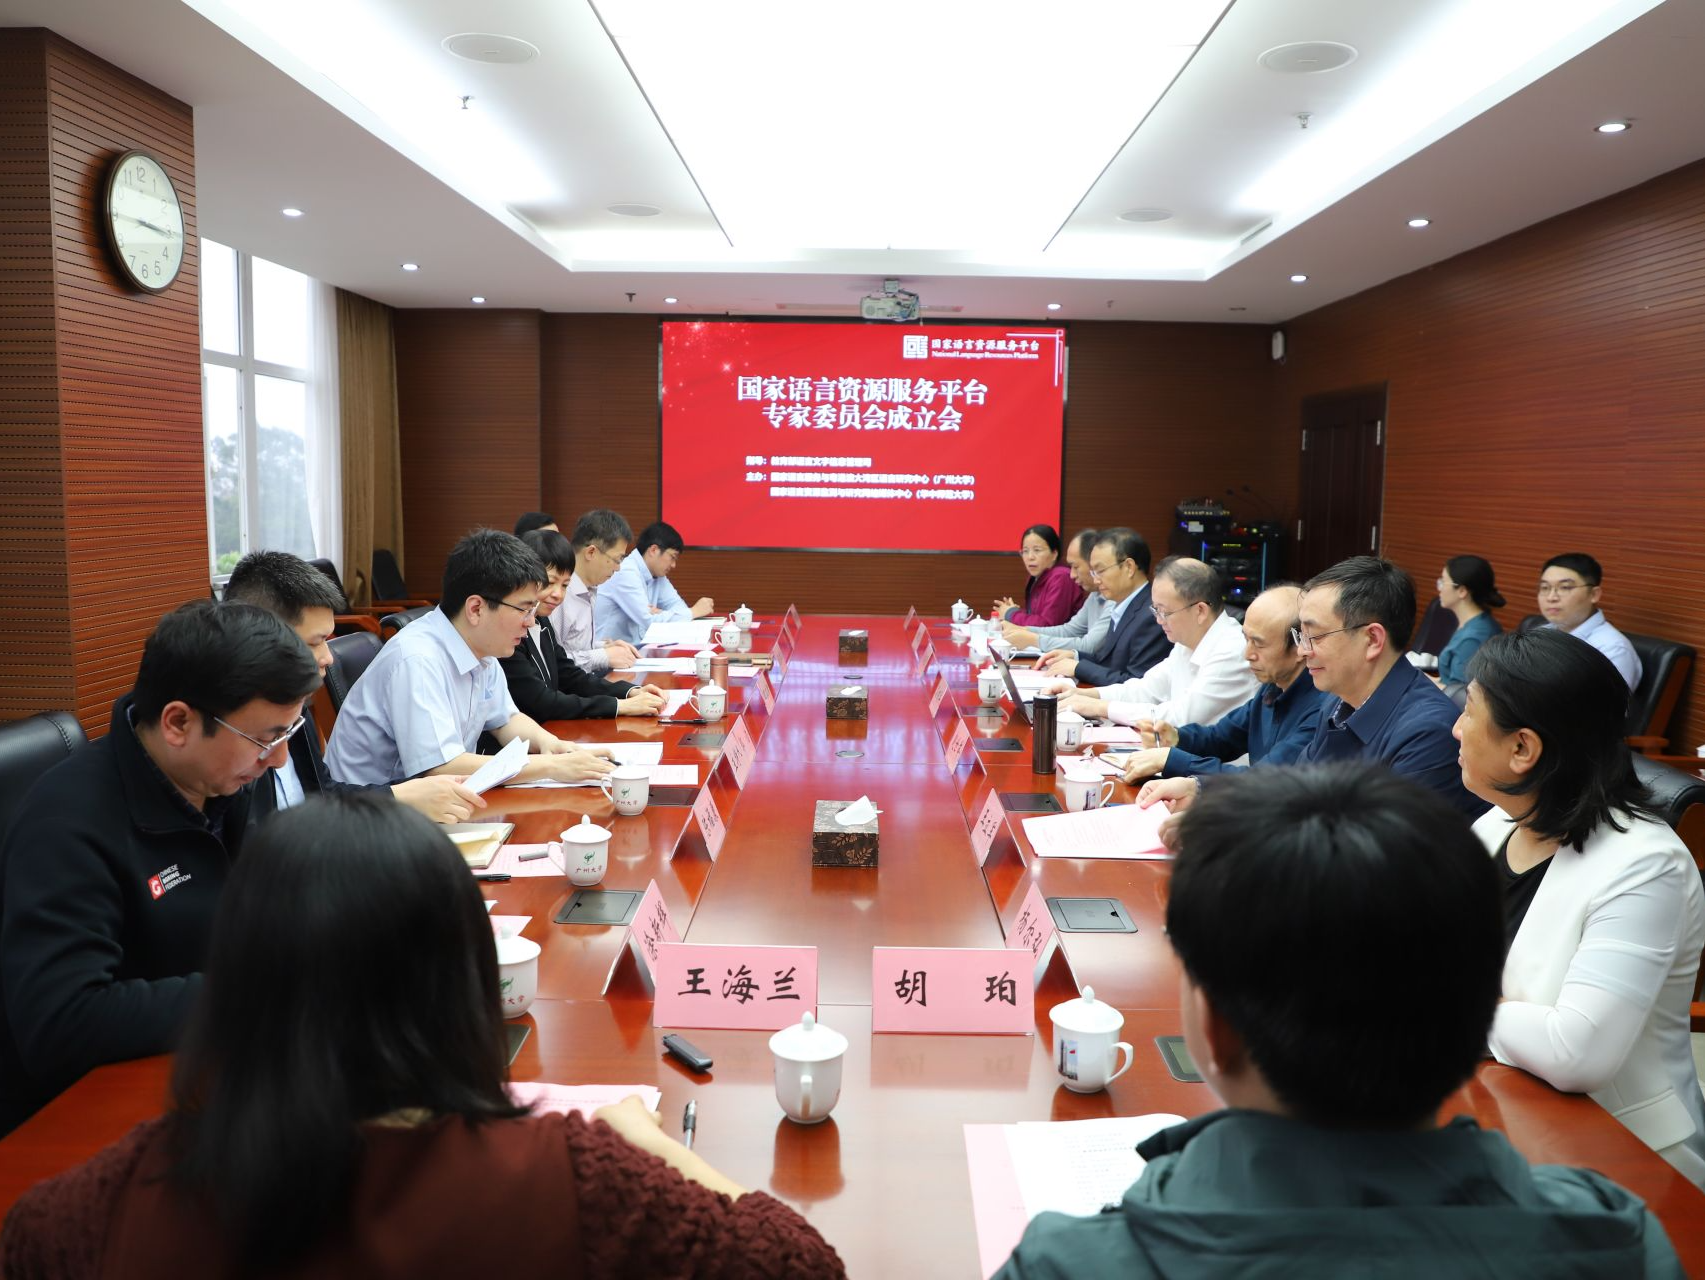  国家语言资源服务平台专家委员会成立会在广州大学召开